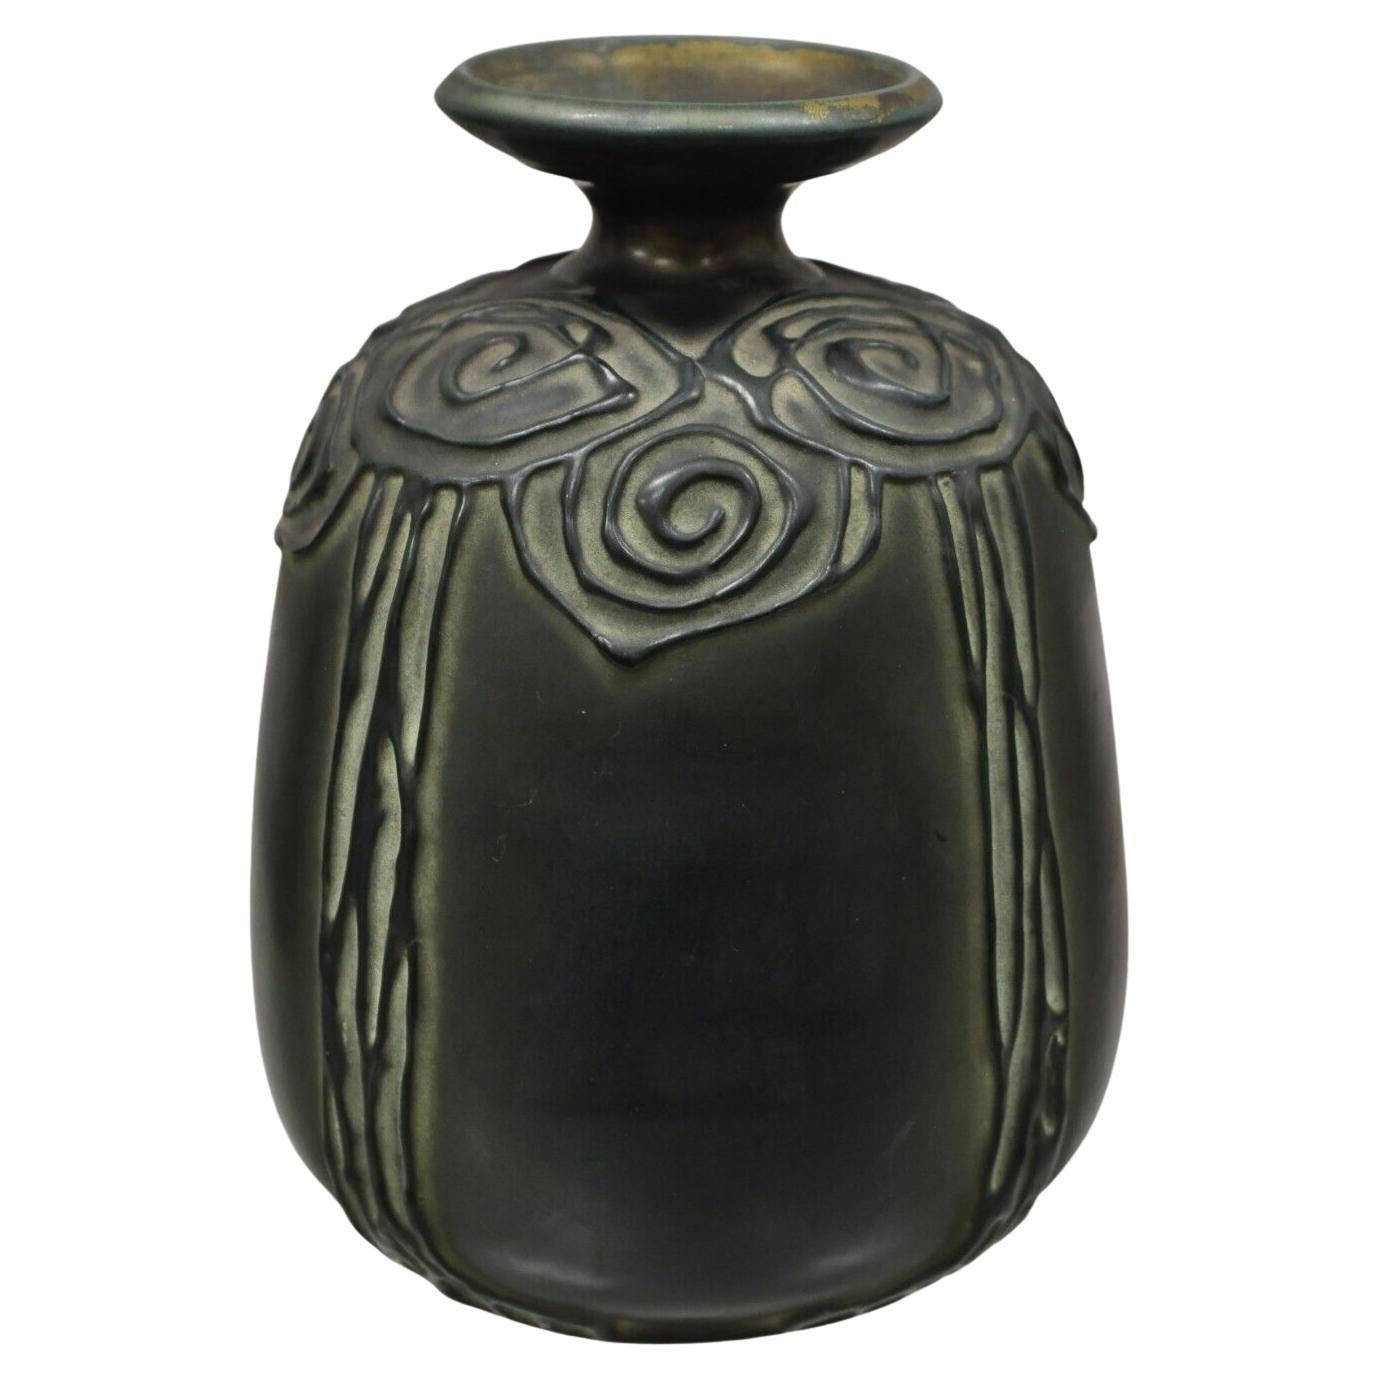 Grand vase antique Art Nouveau Amphora bleu vert irisé 3263